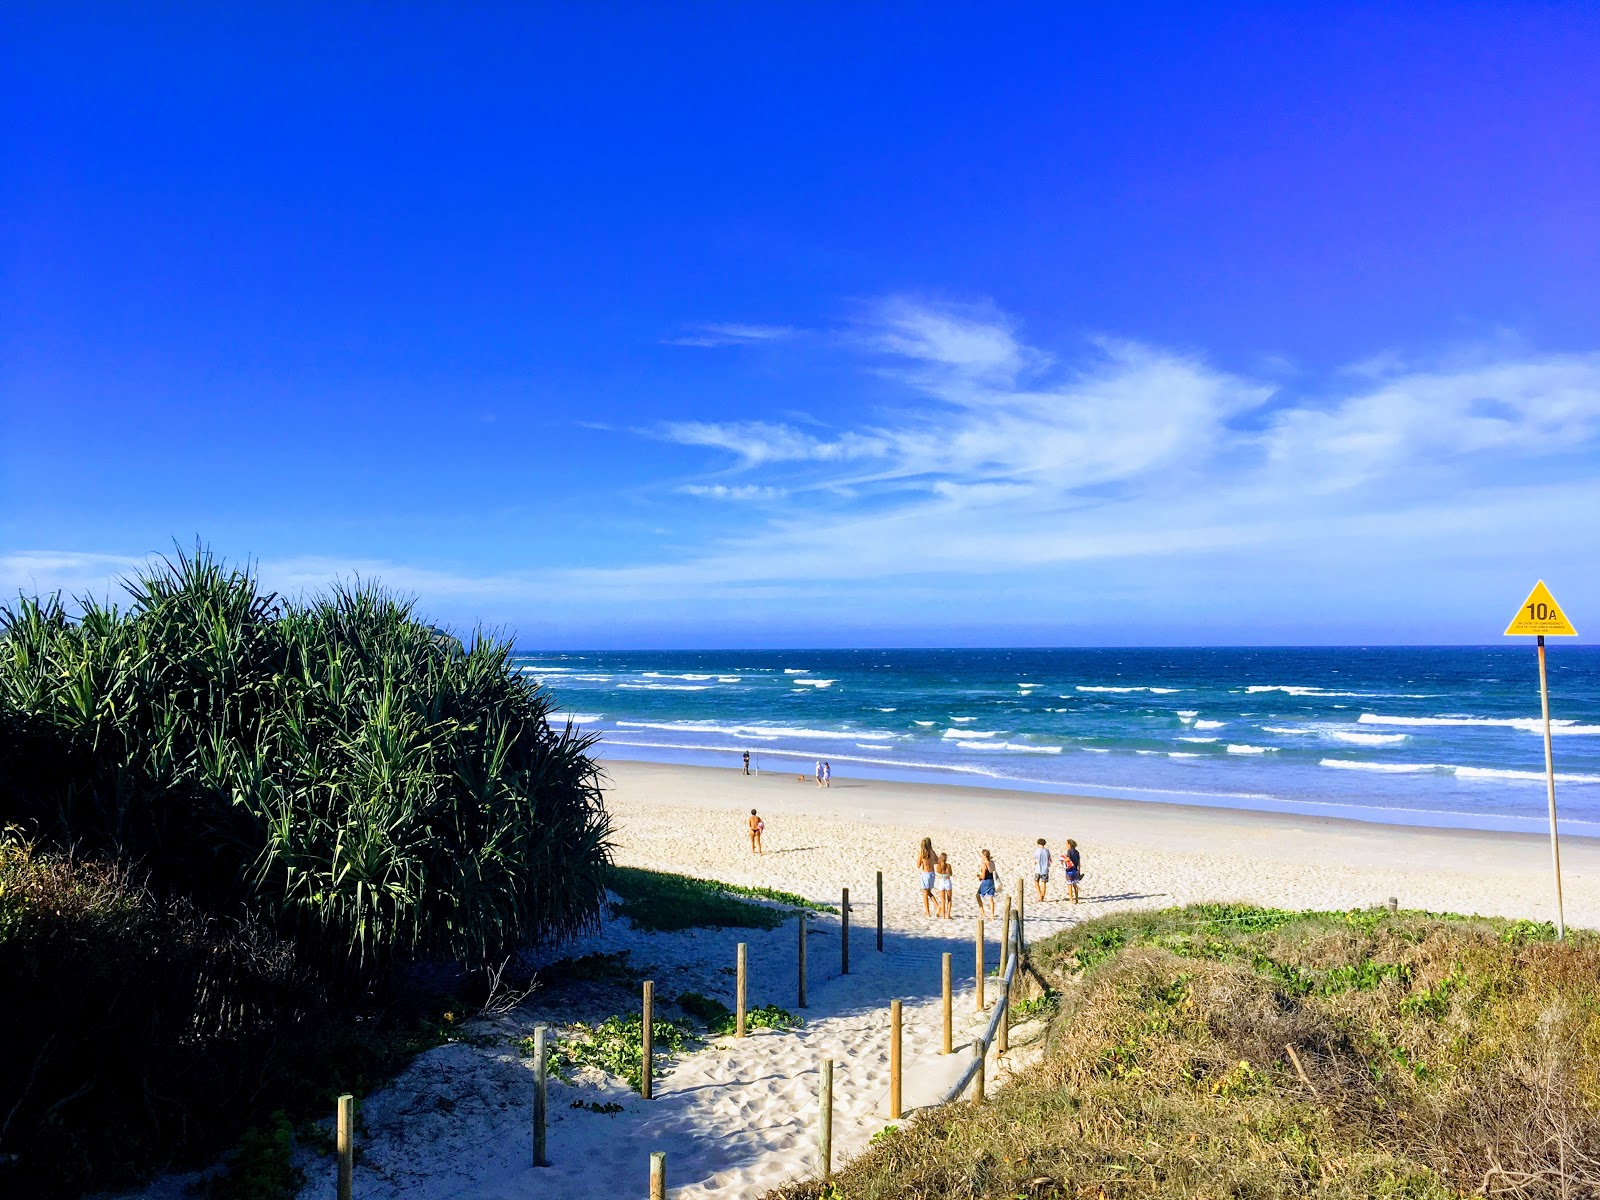 Fotografie cu Angels Beach - locul popular printre cunoscătorii de relaxare